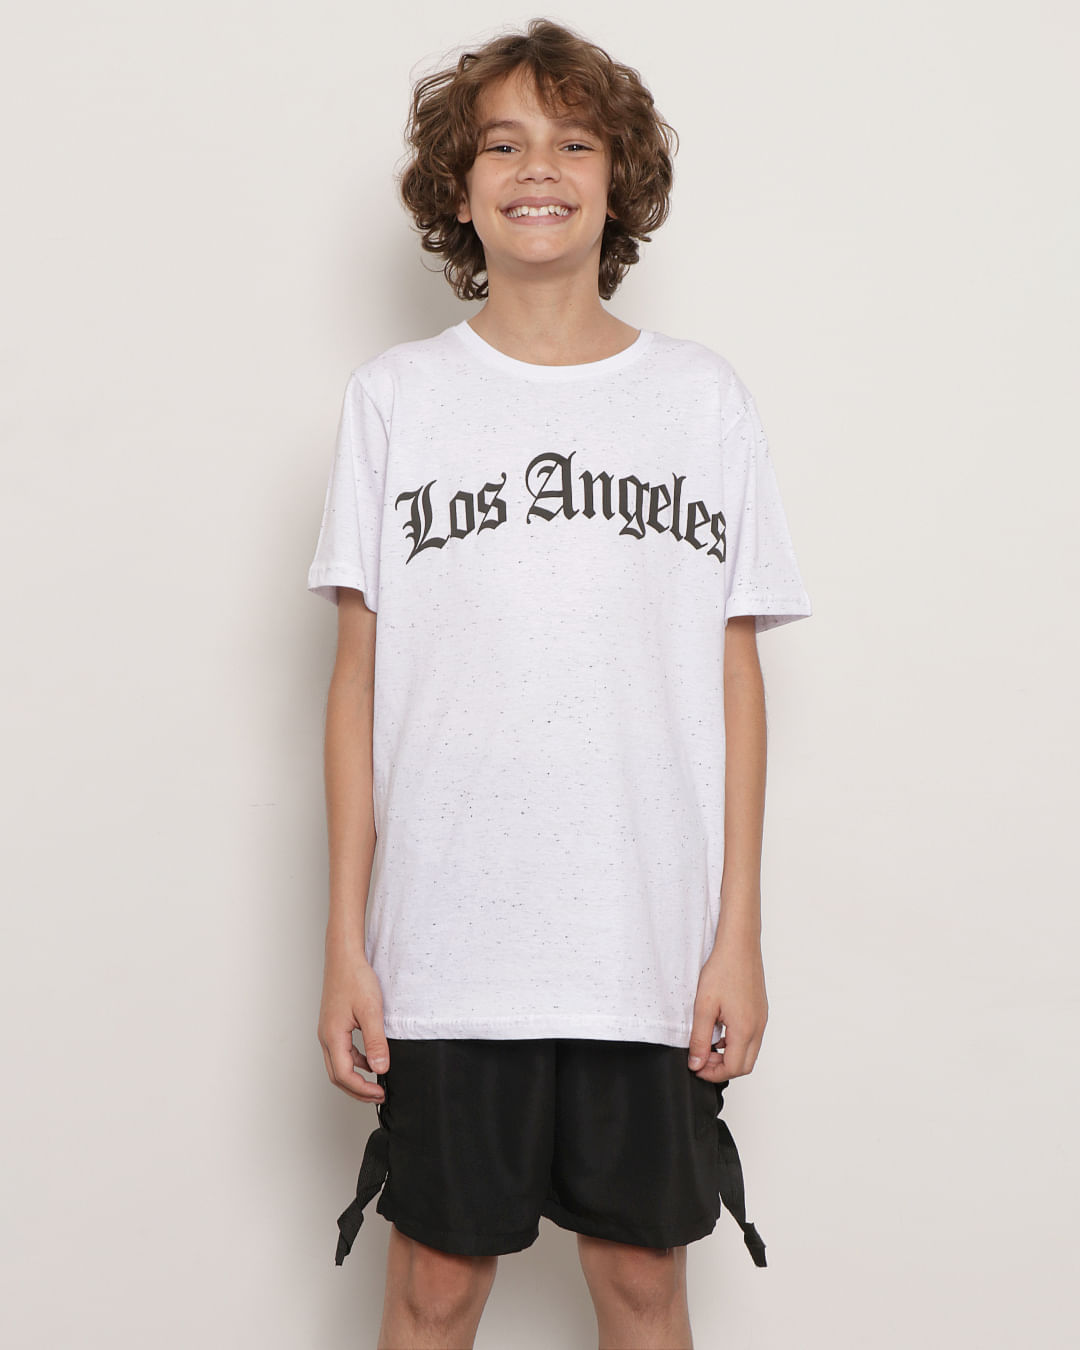 Camiseta Juvenil Manga Curta Botonê Los Angeles Branca